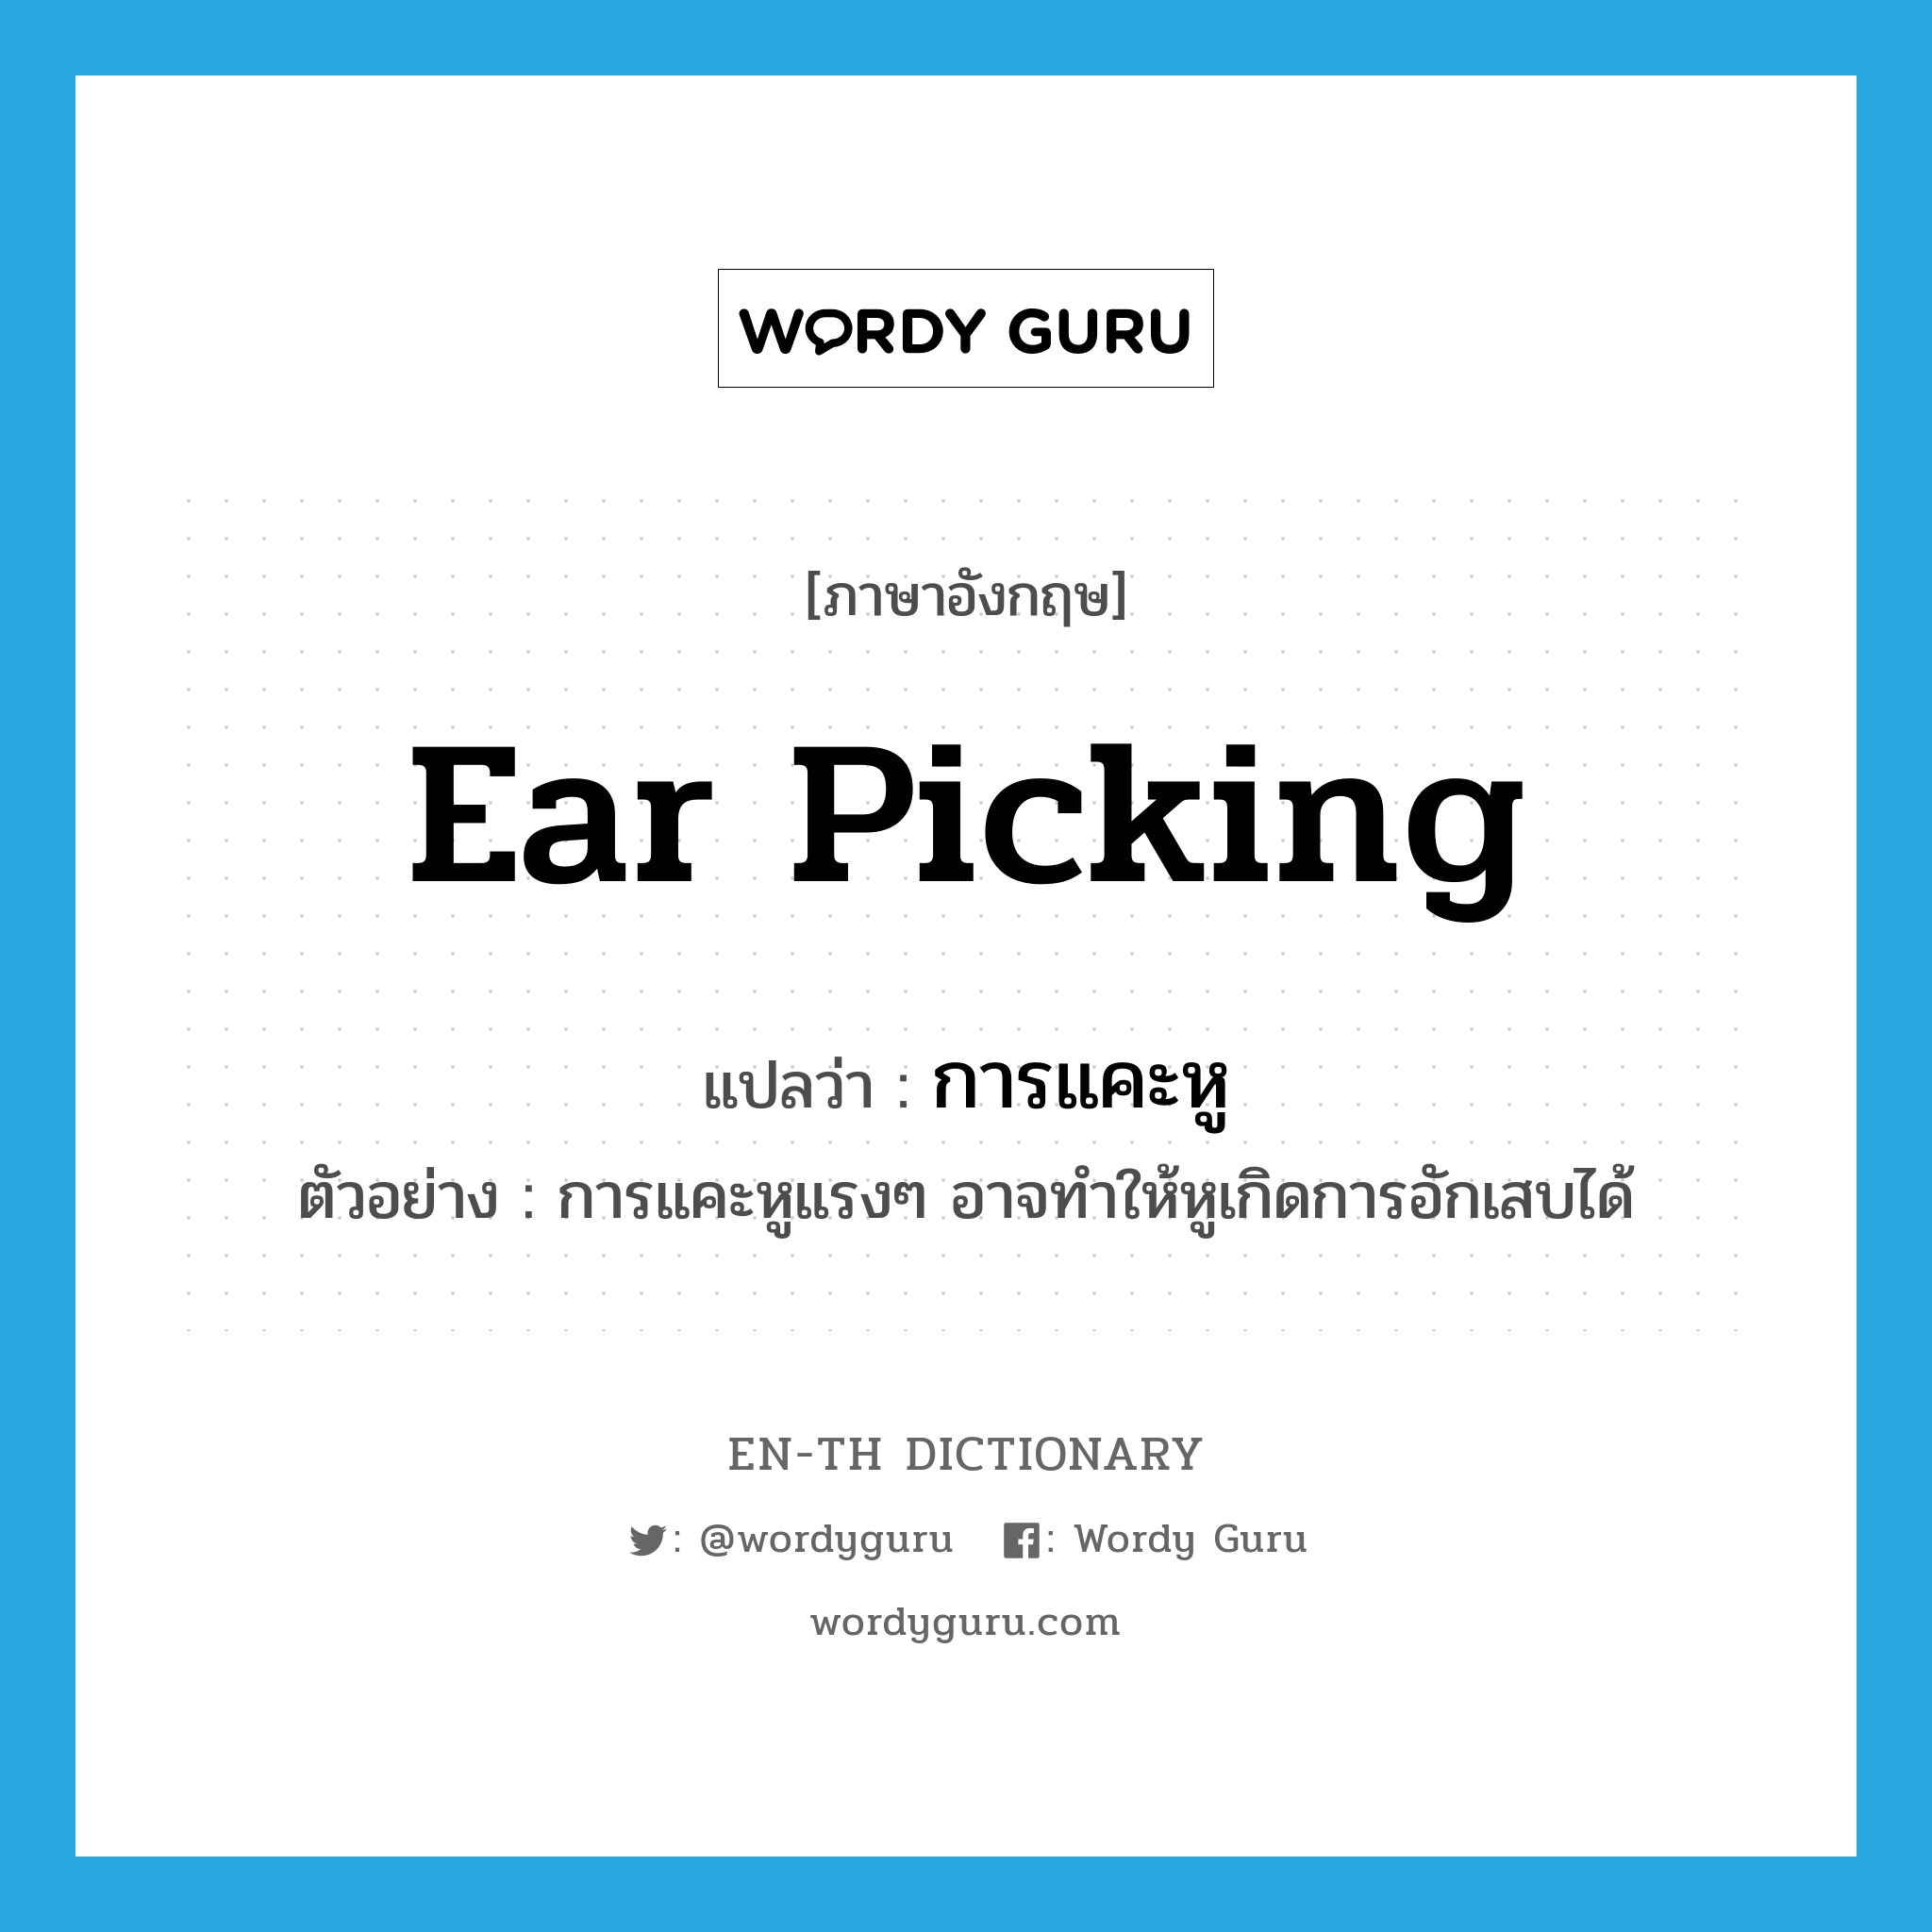 การแคะหู ภาษาอังกฤษ?, คำศัพท์ภาษาอังกฤษ การแคะหู แปลว่า ear picking ประเภท N ตัวอย่าง การแคะหูแรงๆ อาจทำให้หูเกิดการอักเสบได้ หมวด N